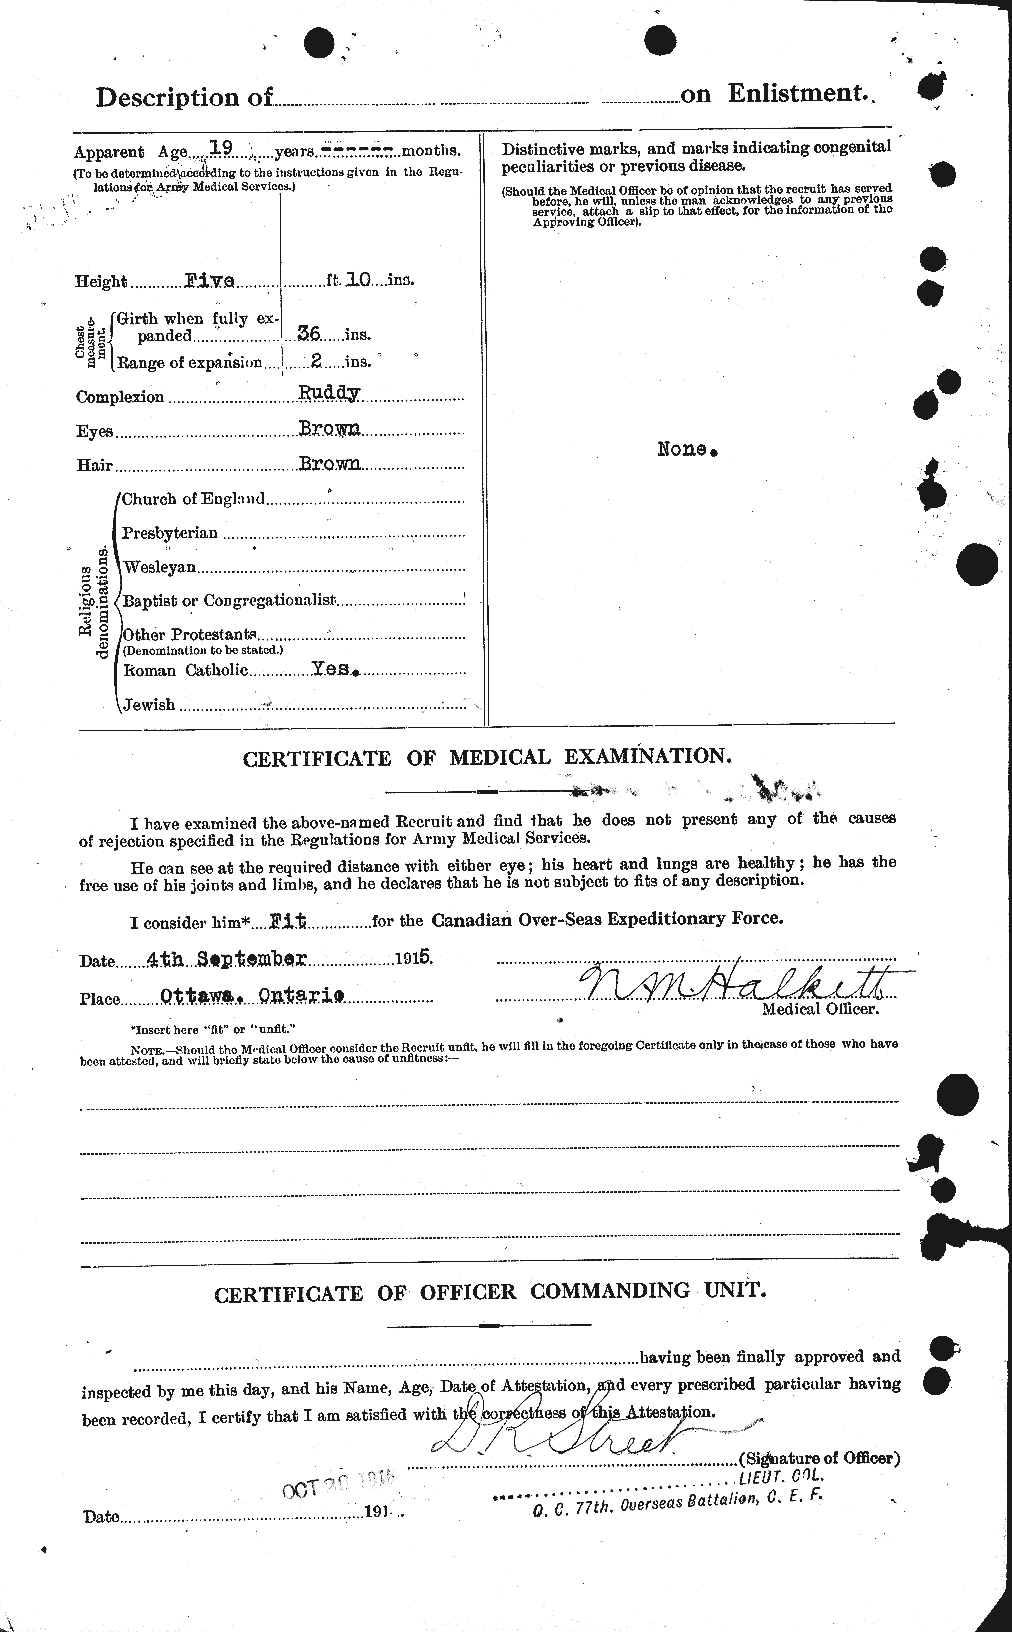 Dossiers du Personnel de la Première Guerre mondiale - CEC 249857b